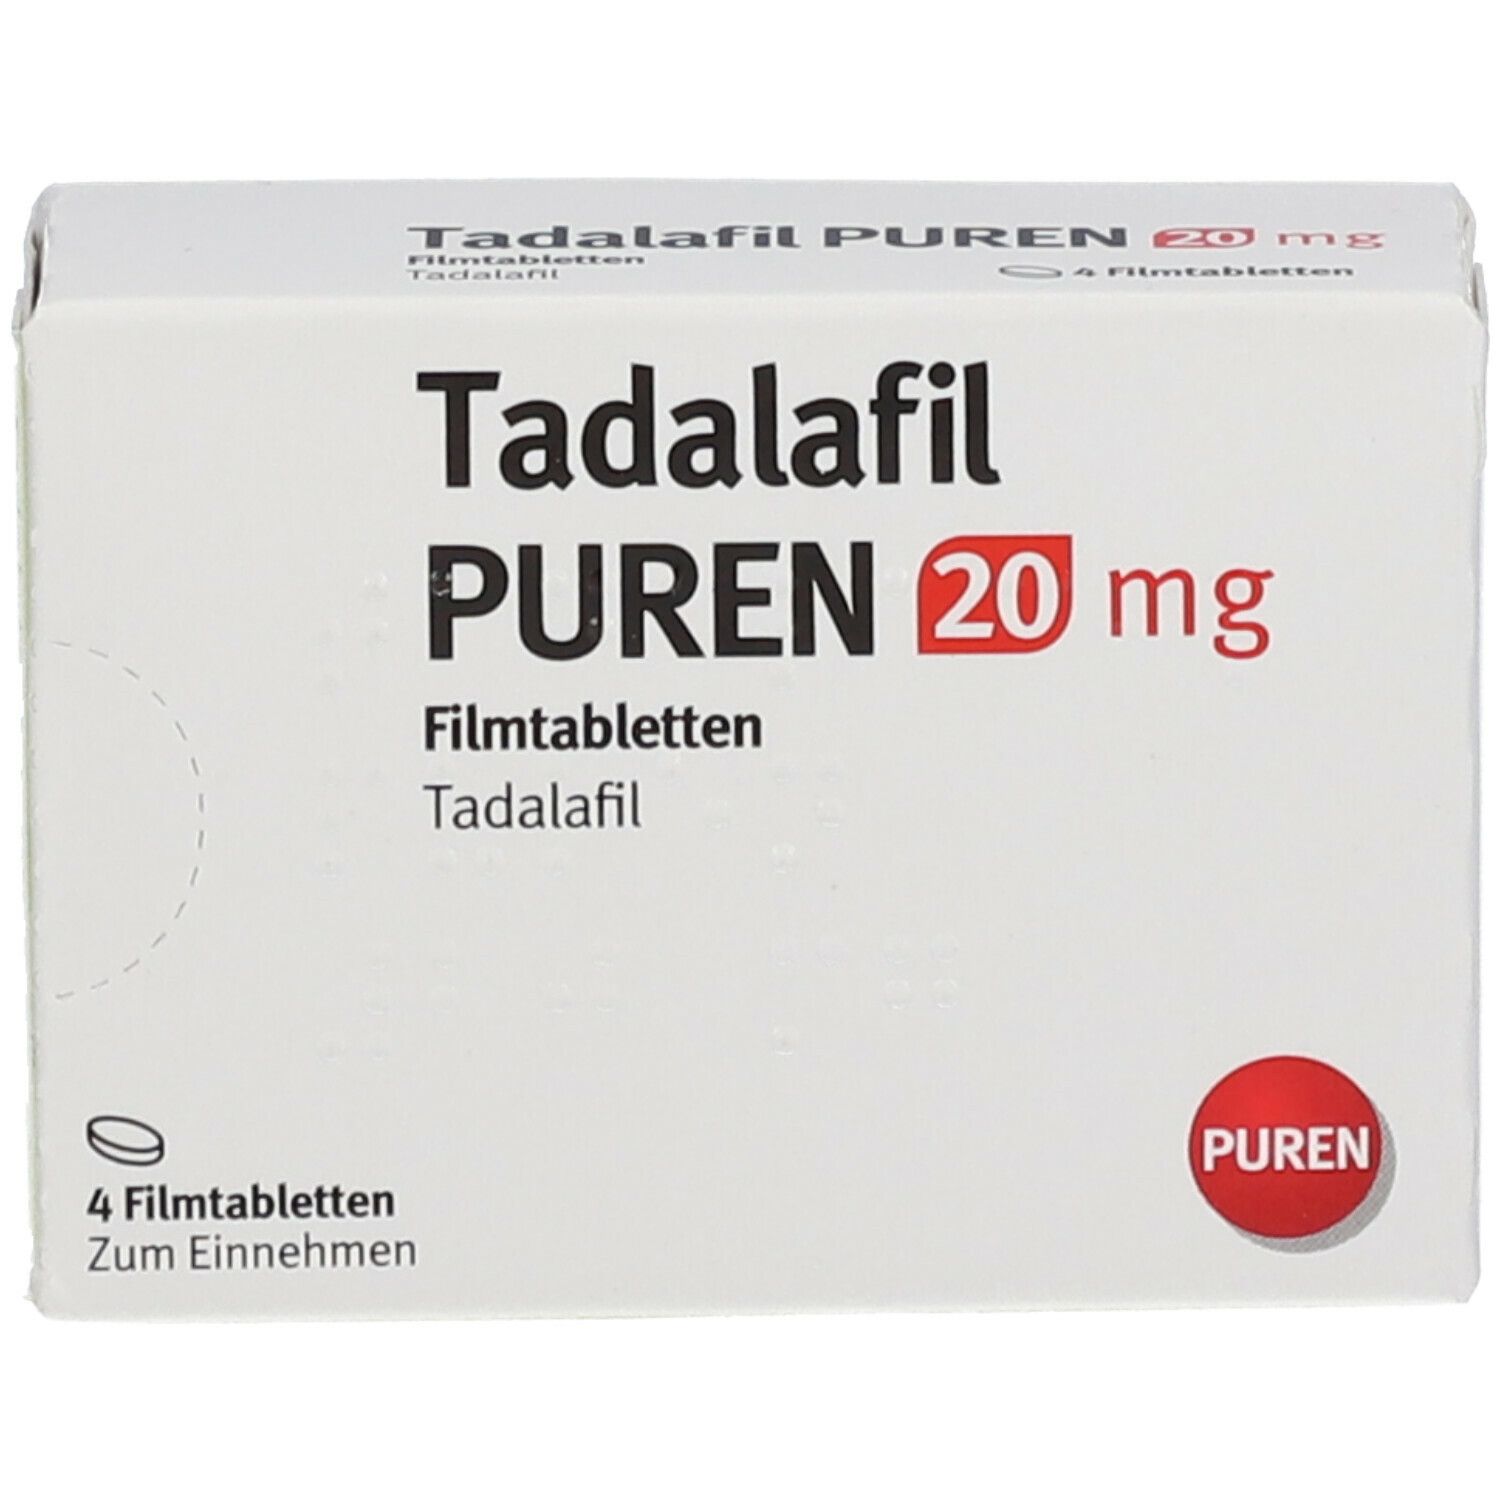 Tadalafil PUREN 20 mg